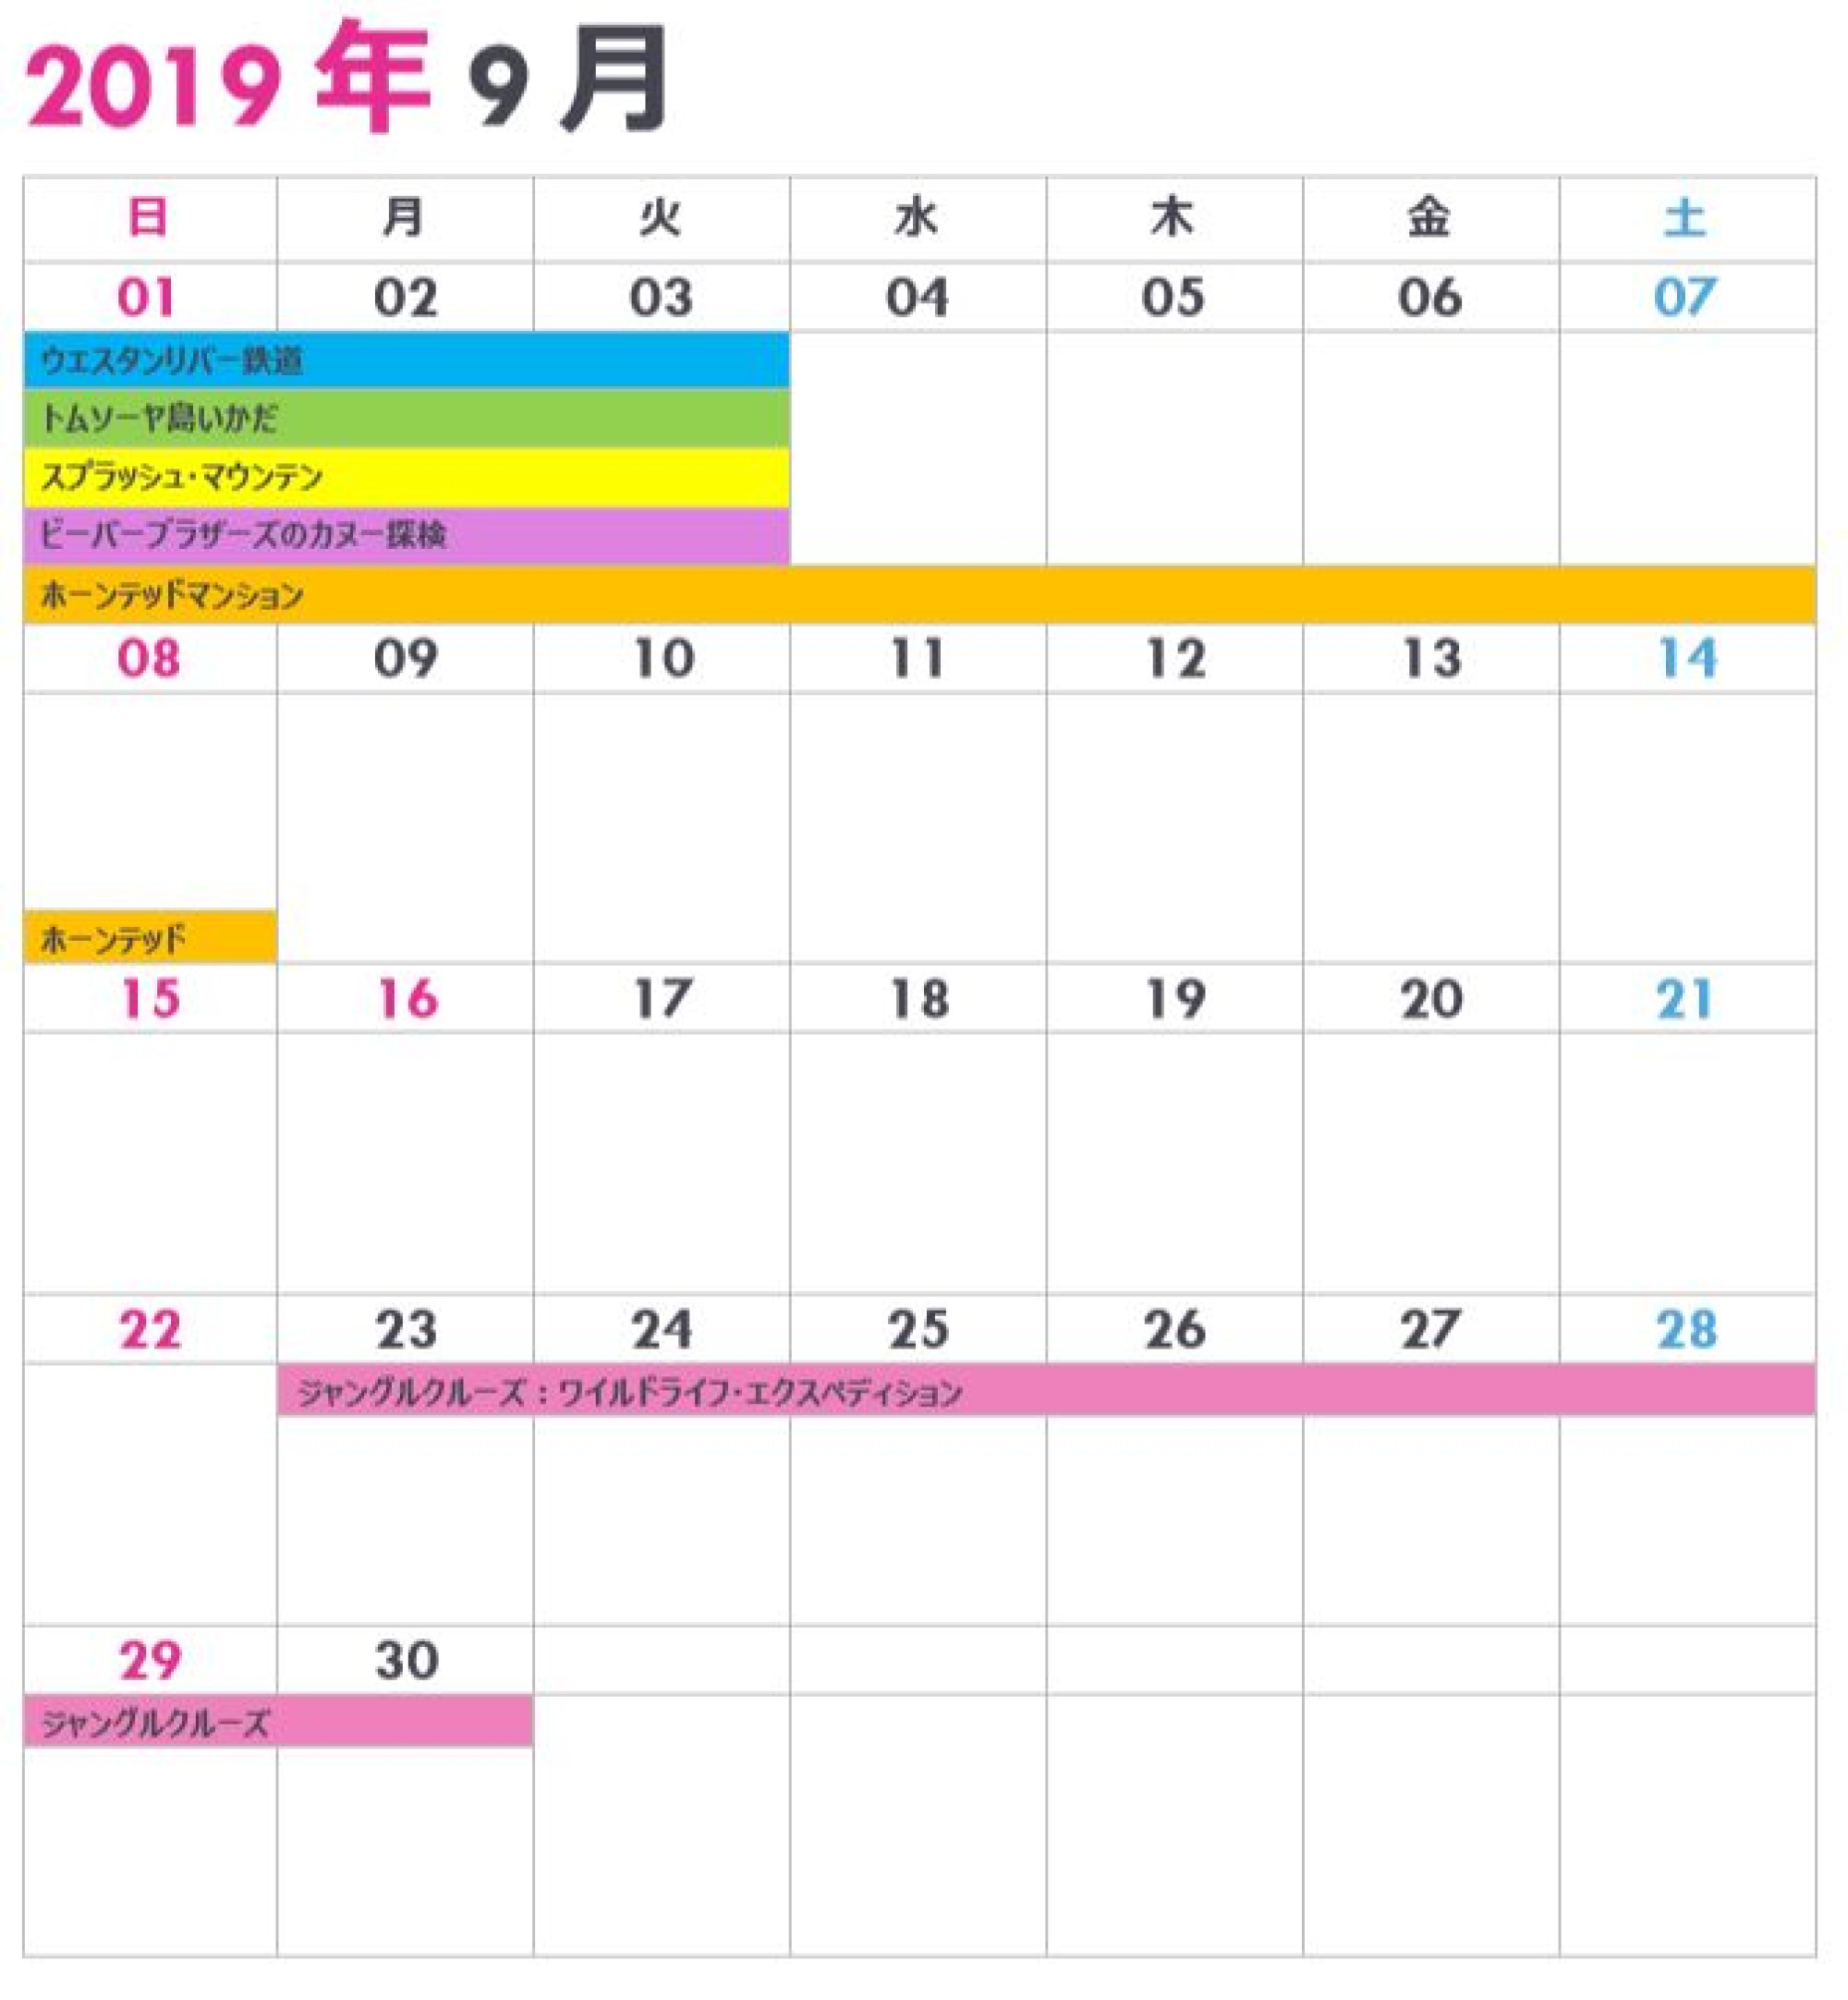 東京ディズニーランドの休止 リハブカレンダー 19年9月 キャステル Castel ディズニー情報